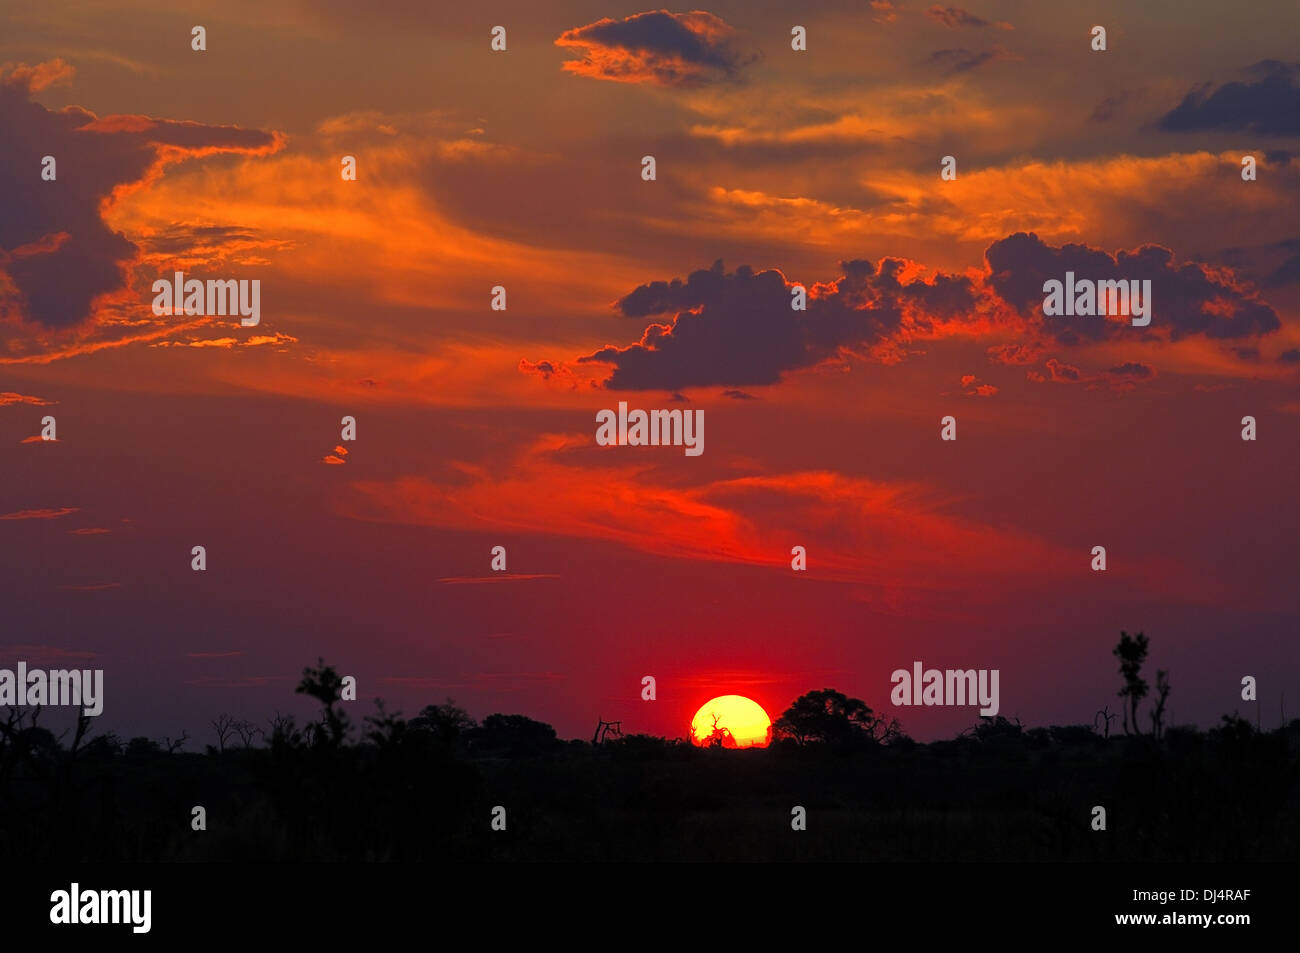 Sunset in the African savanna Stock Photo